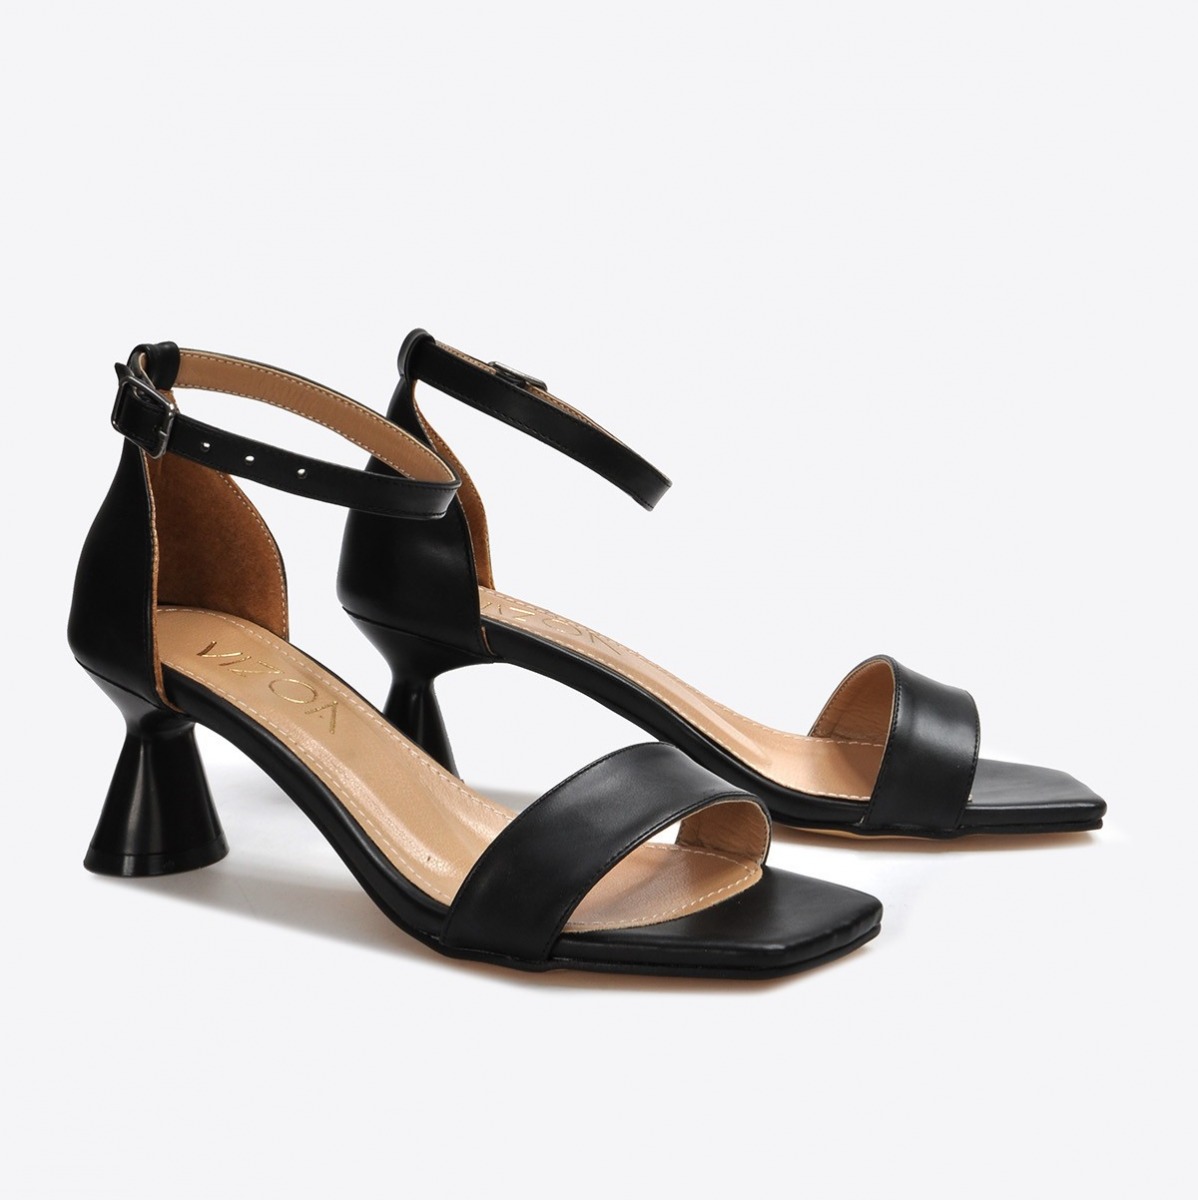 Flo Kadın  Siyah Klasik Topuklu Ayakkabı VZN21-032Y. 5